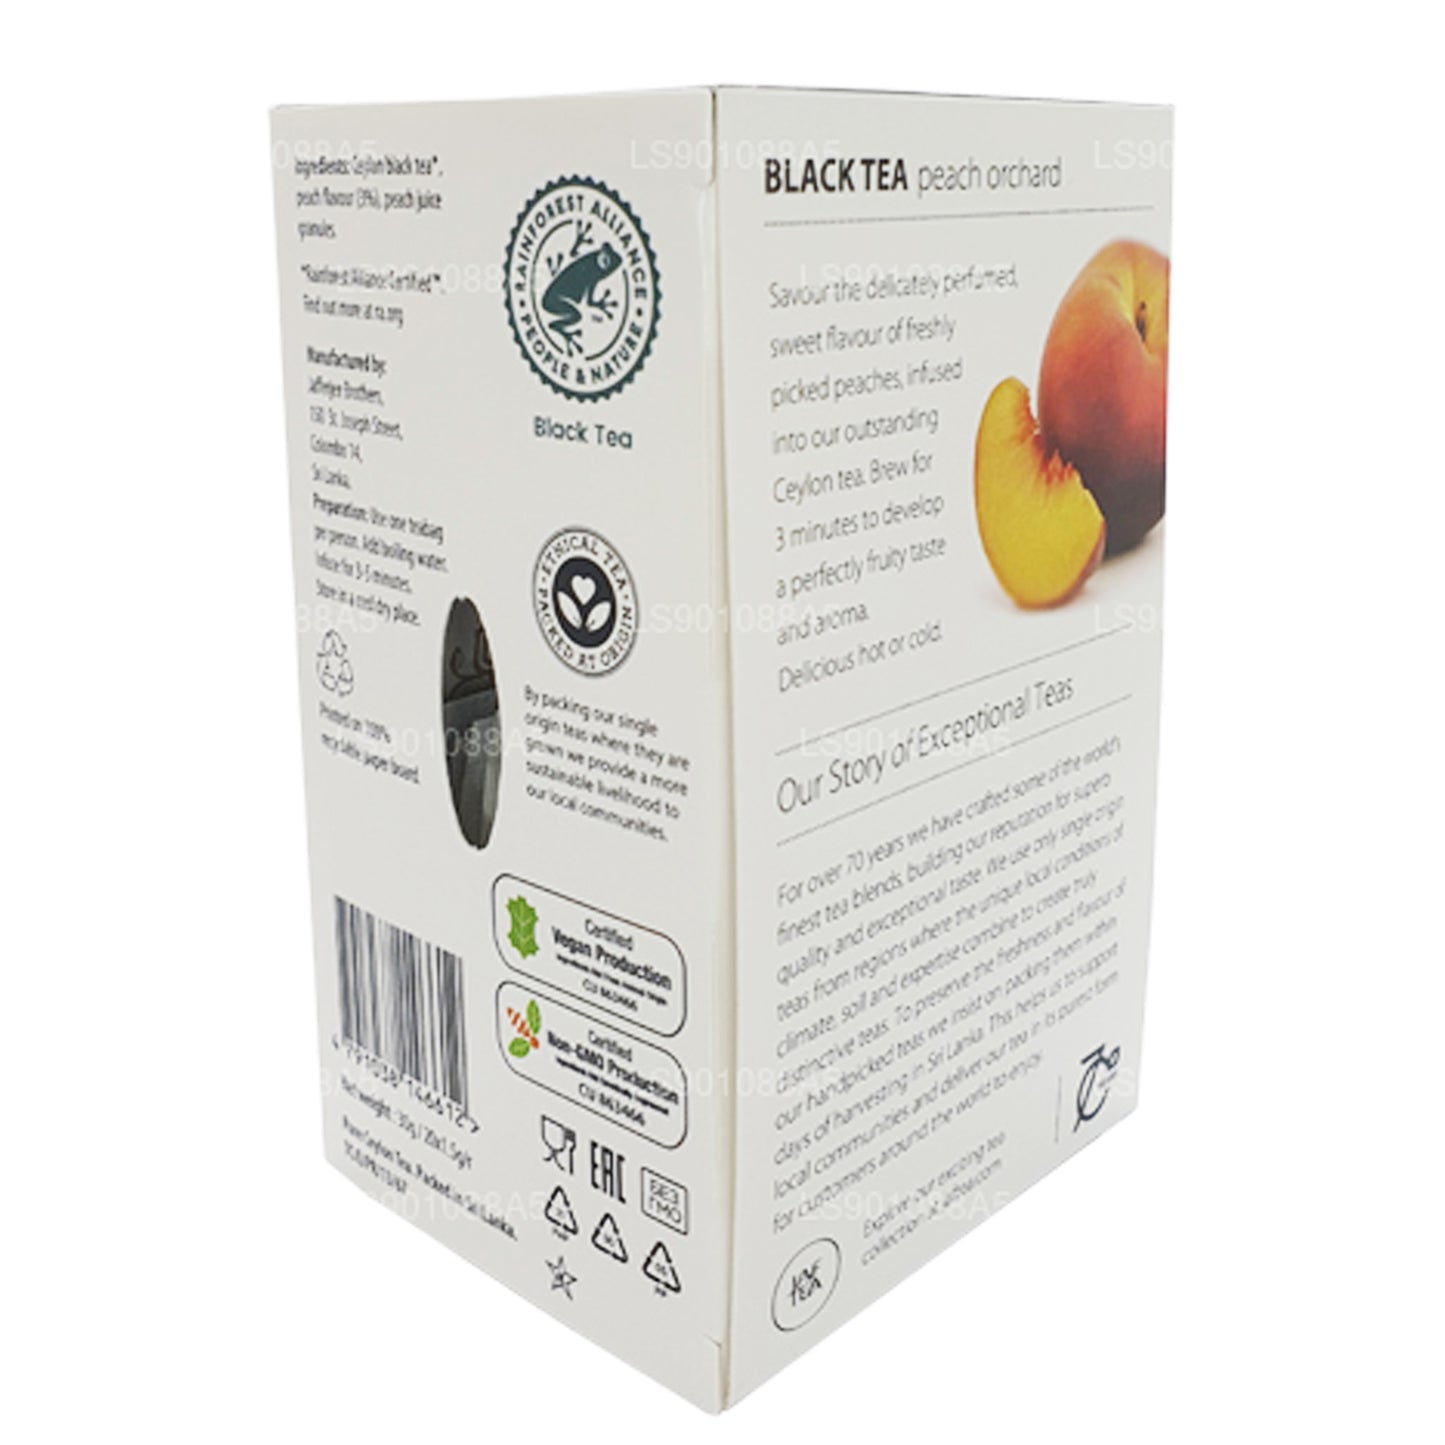 Té negro Jaf Tea Pure Fruits Collection Peach Orchard (30 g), 20 bolsitas de té